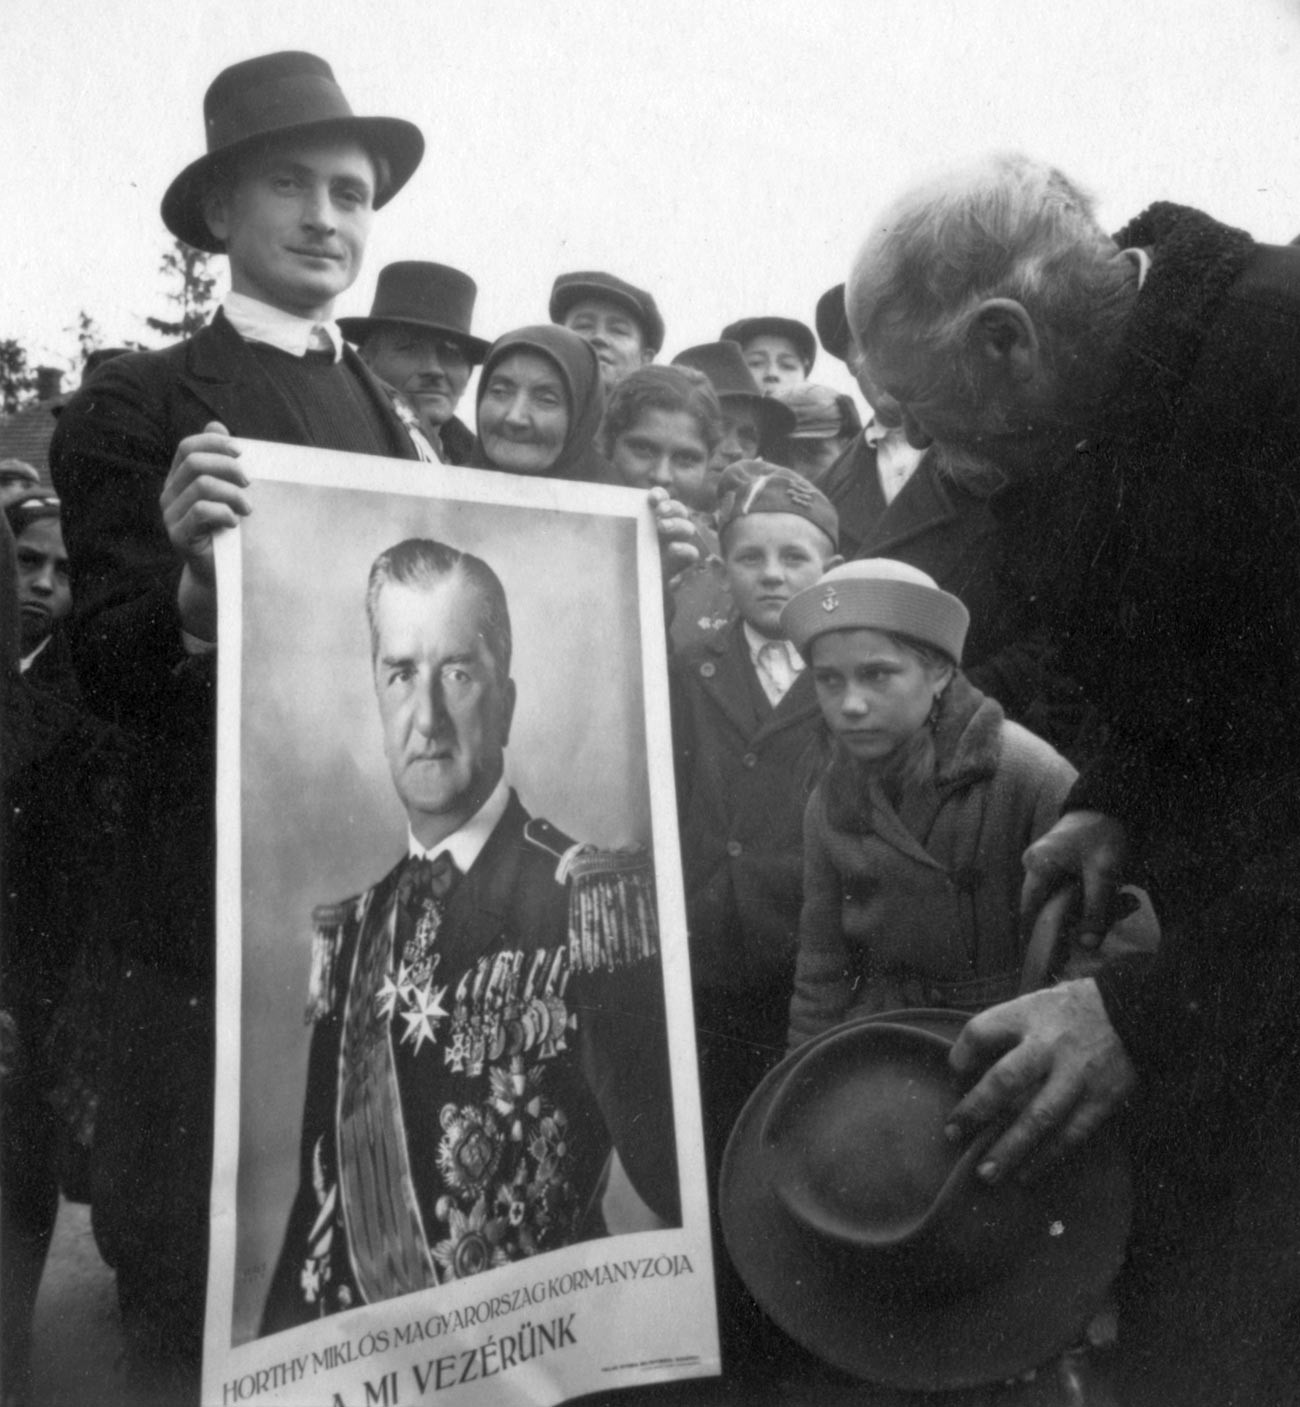 Mađari sa slikom Miklósa Horthyja.
